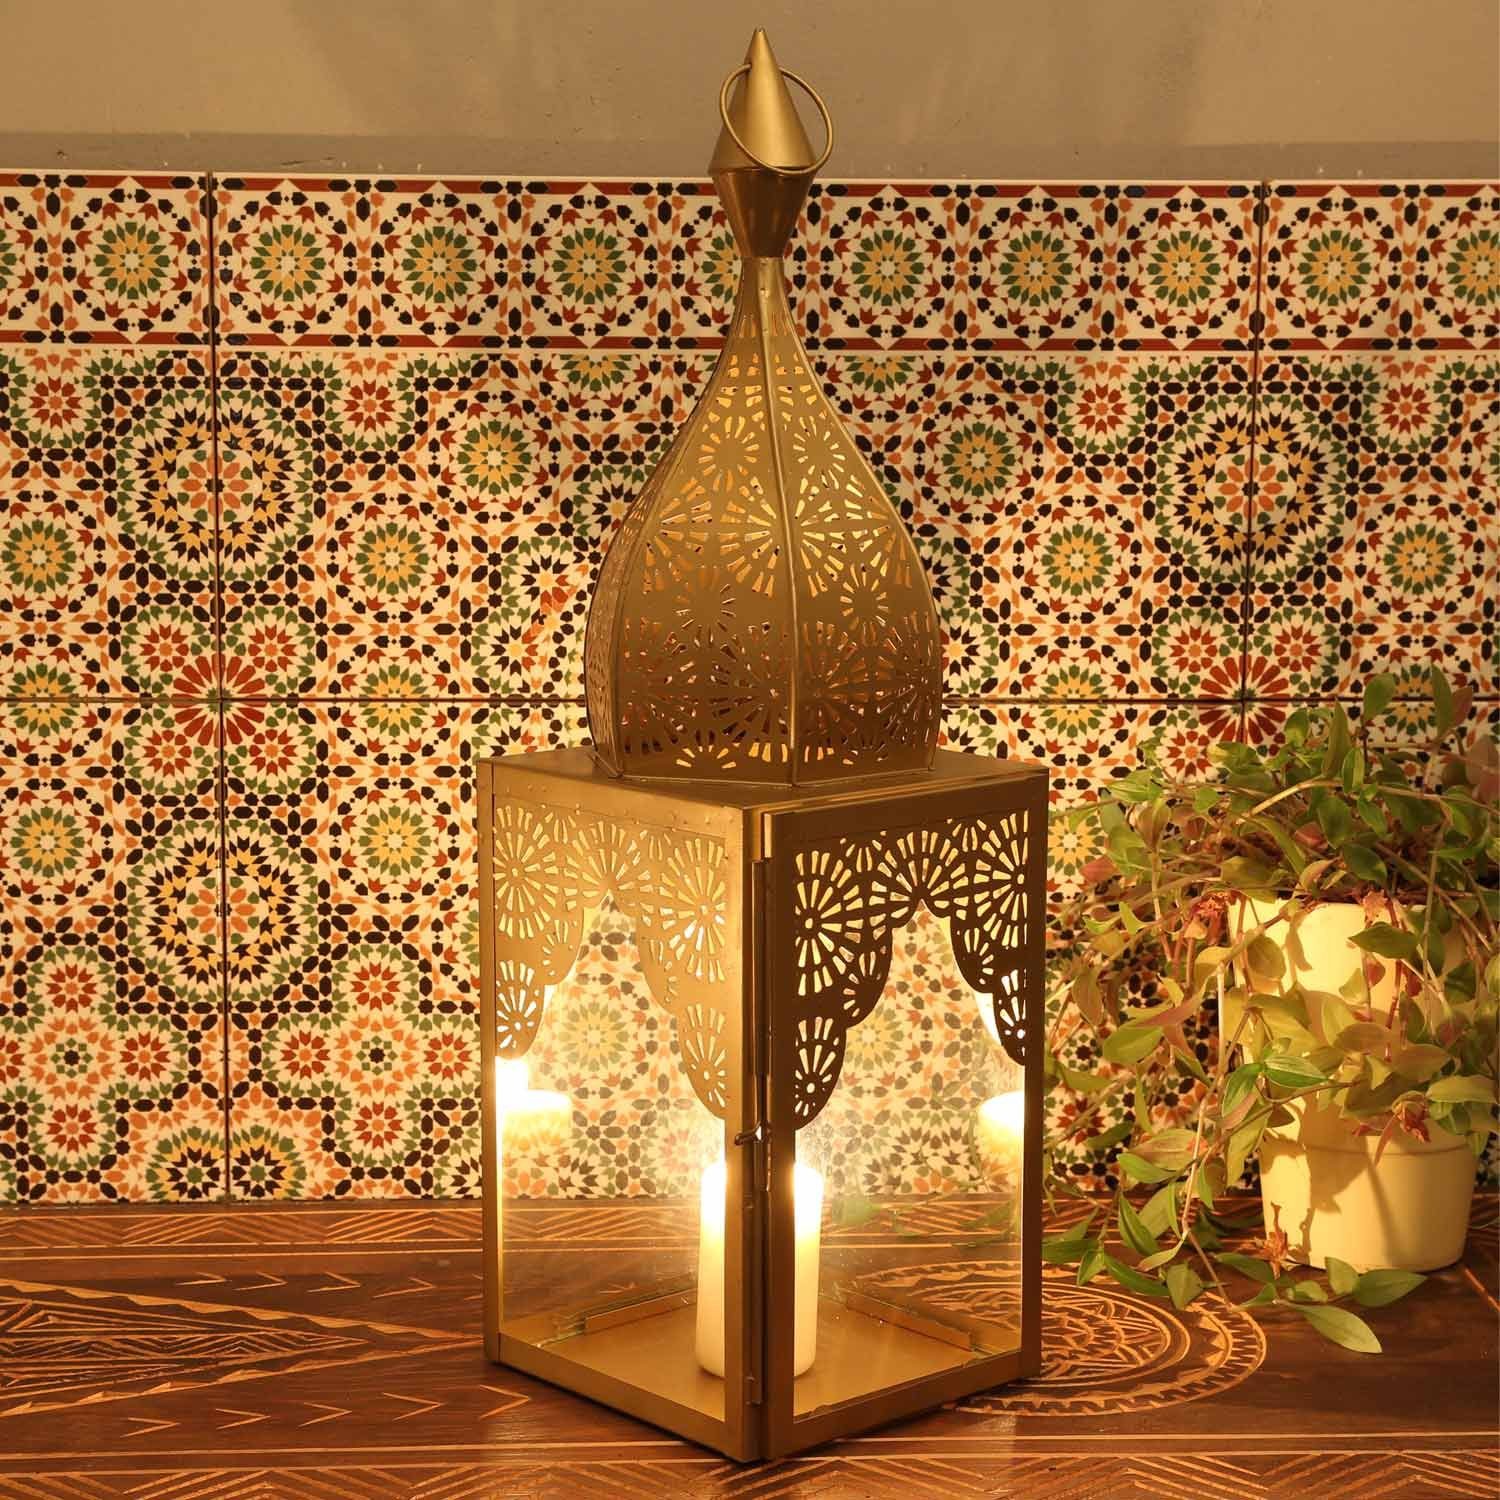 Casa Moro Windlicht Orientalische Laterne Modena Gold L aus Glas & Metall  Höhe 60cm Minaretten Form, Marokkanische Glaslaterne Windlicht Kerzenhalter  wie aus 1001 Nacht, schöne Weihnachtsbeleuchtung, IRL640, aus  traditioneller Handarbeit